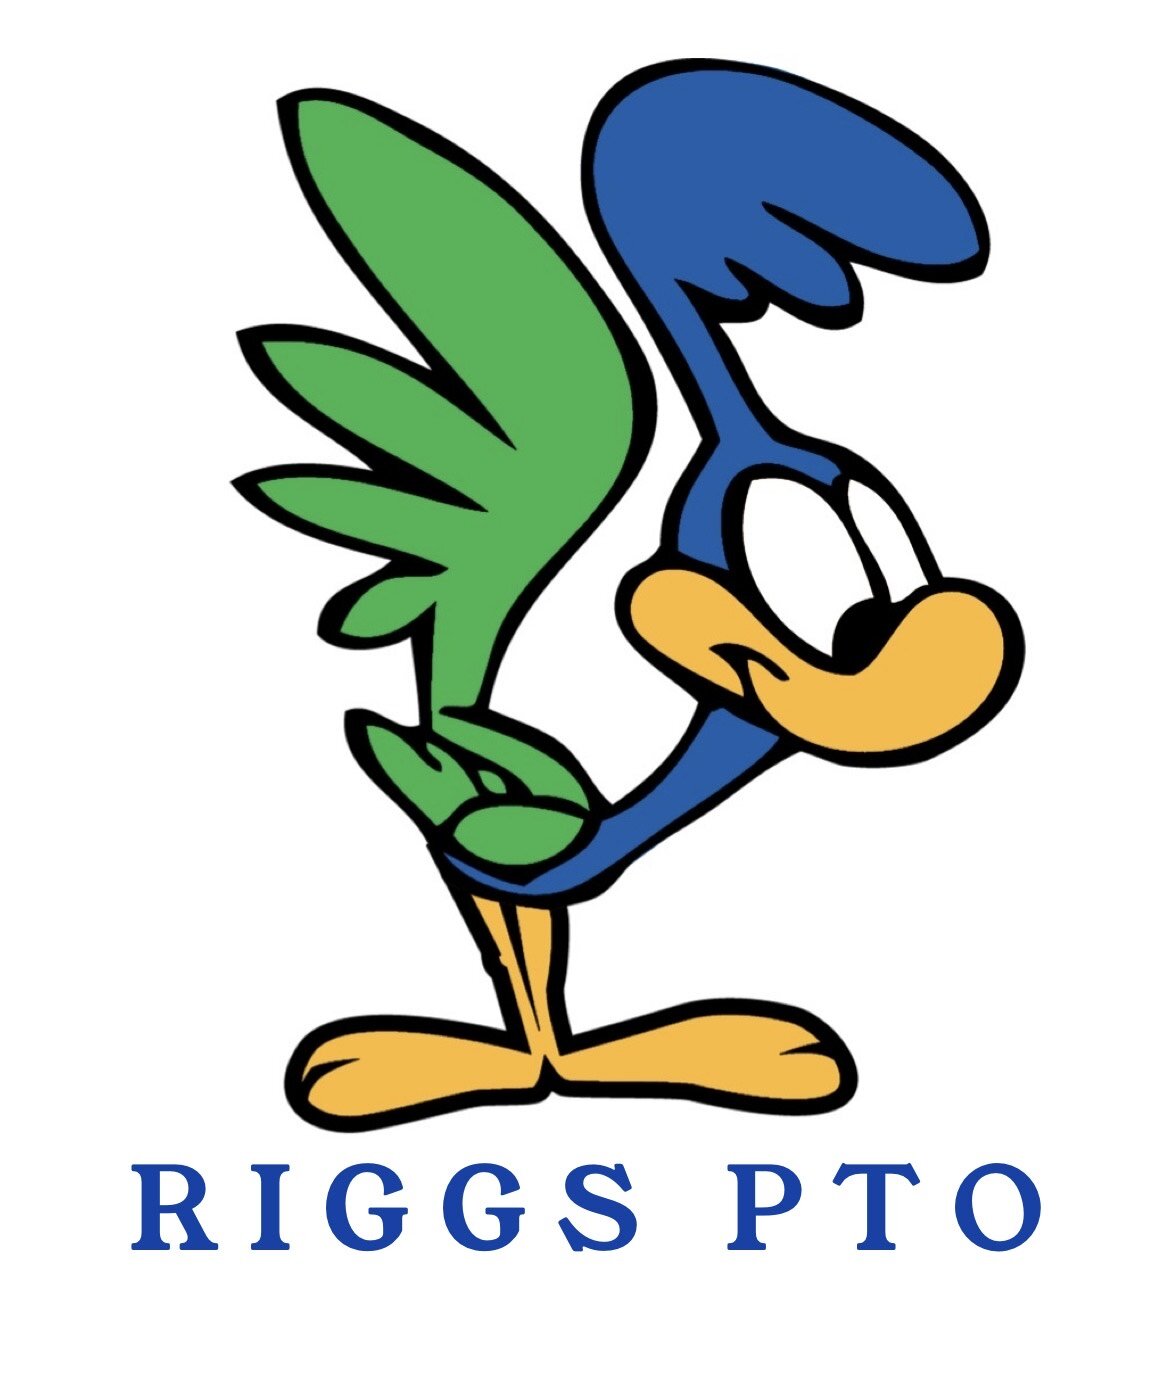 Riggs PTO 